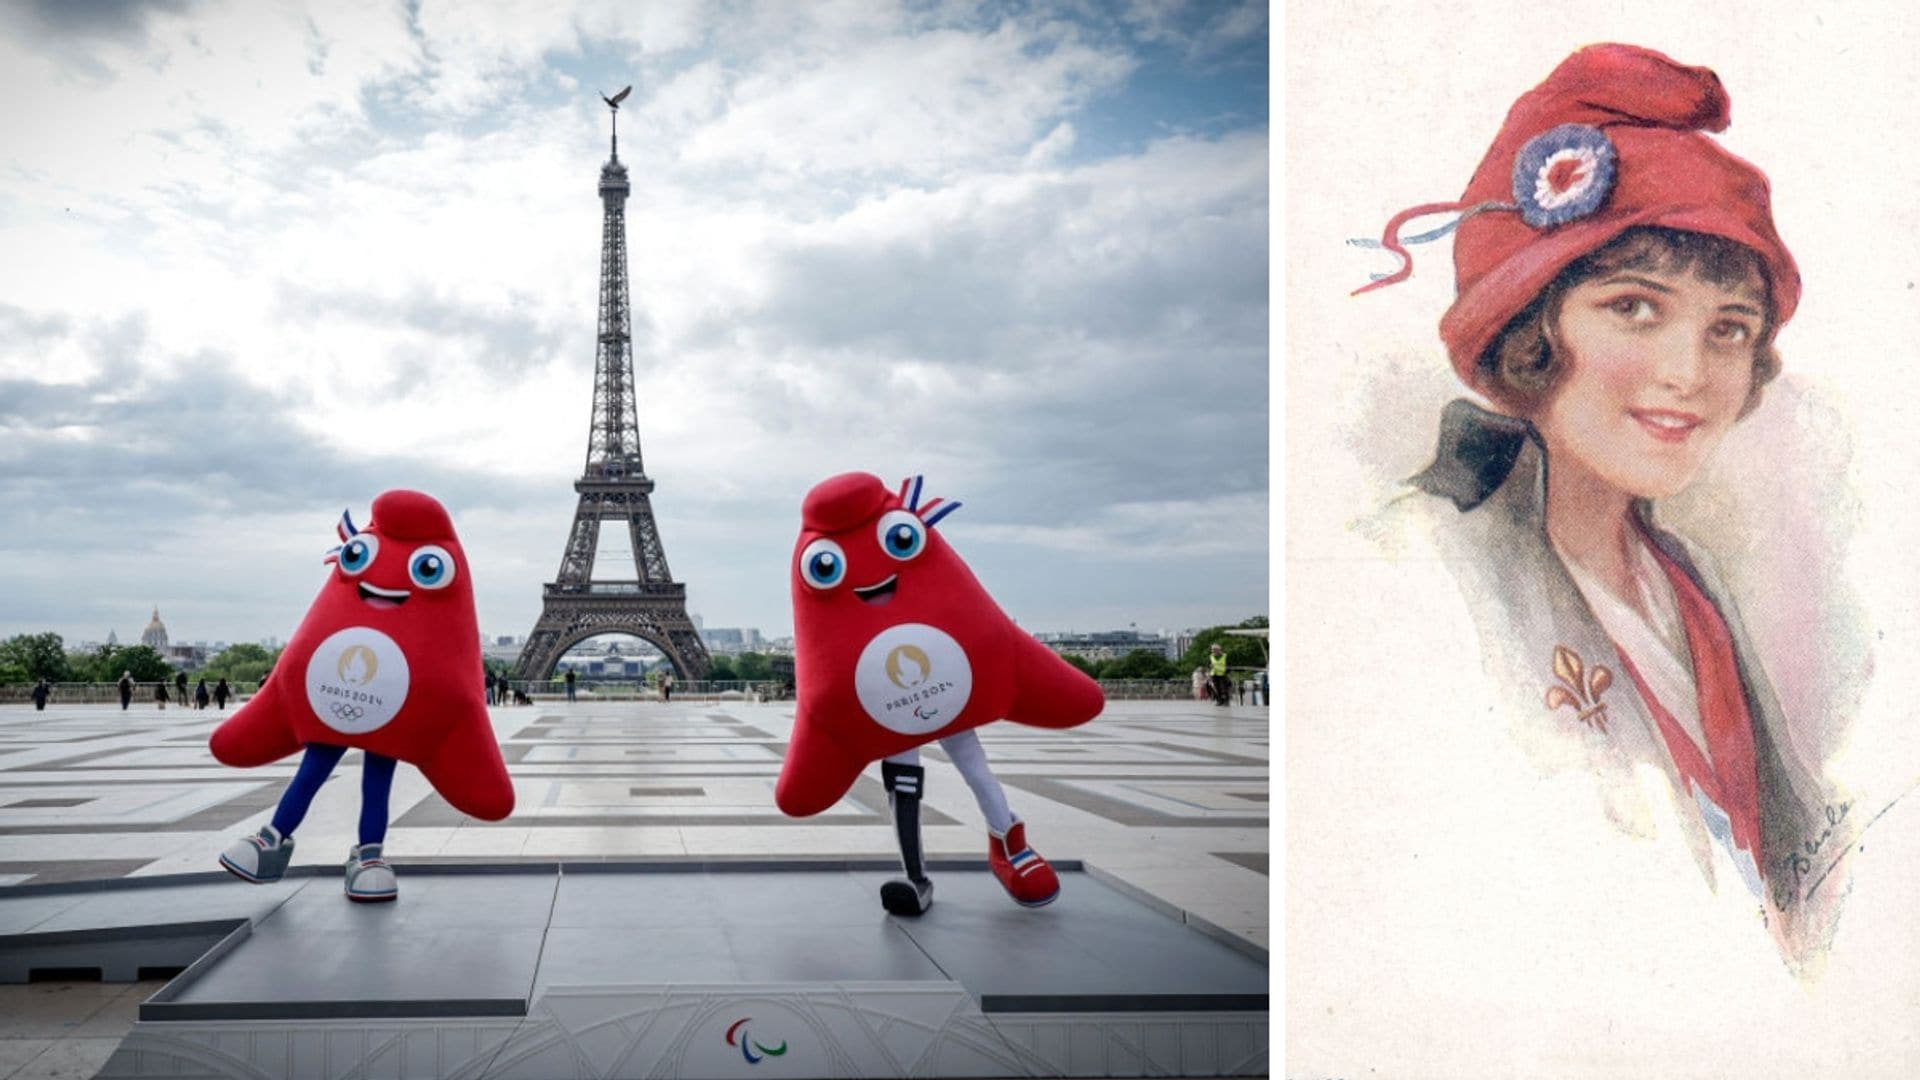 Meet the Phrygian Cap: The Symbolic Mascot of Paris 2024